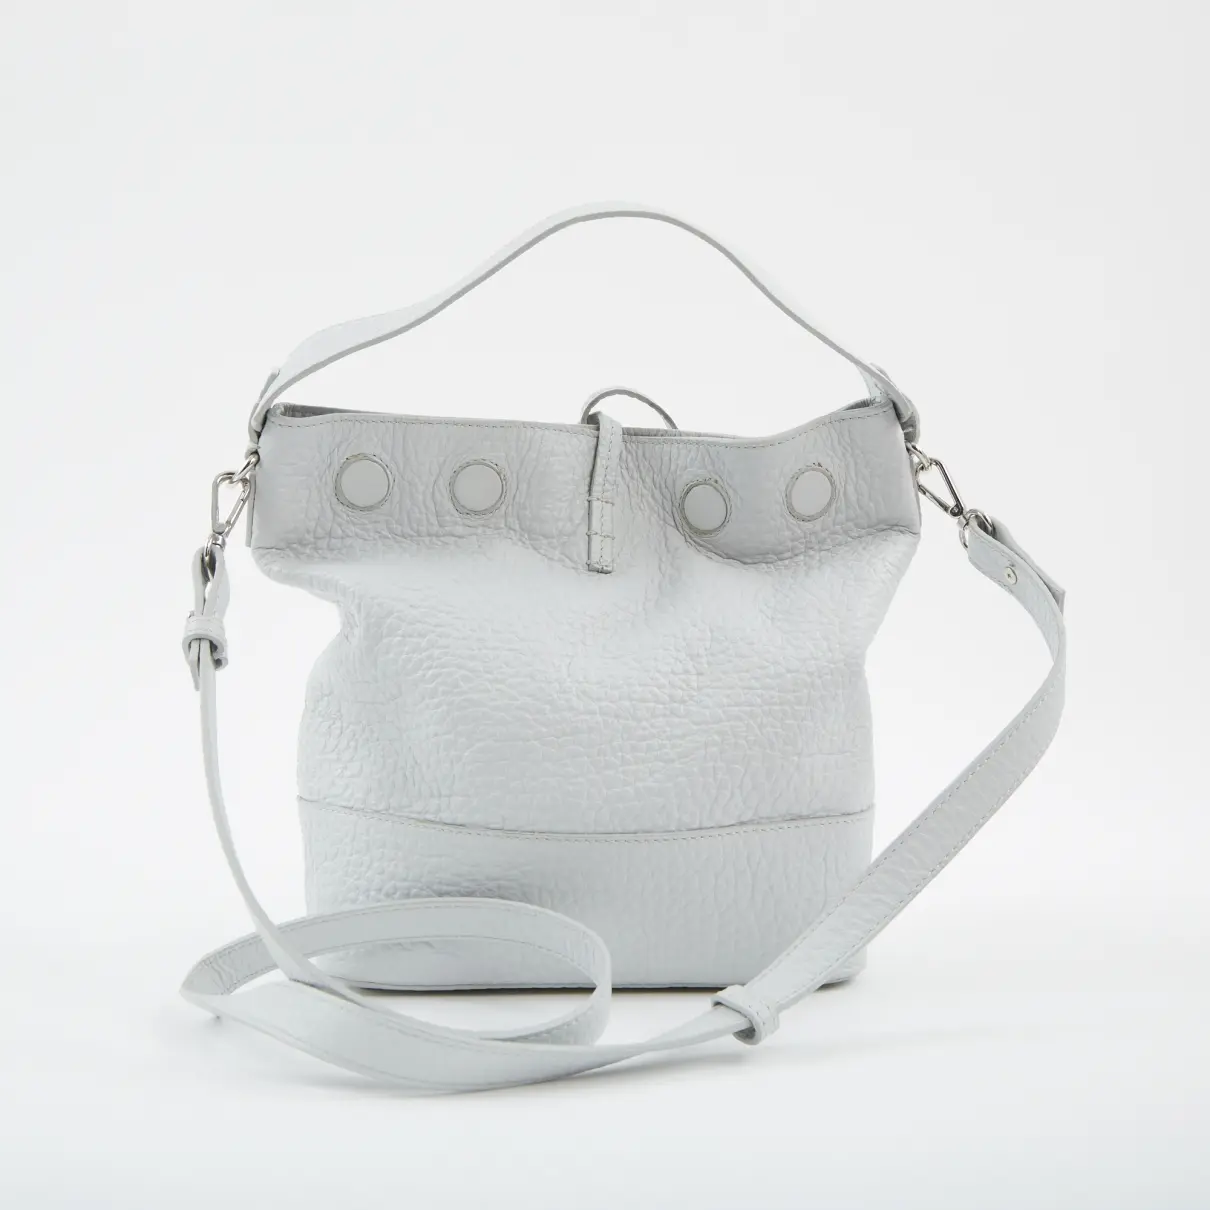 Buy Iris & Ink Leather handbag online